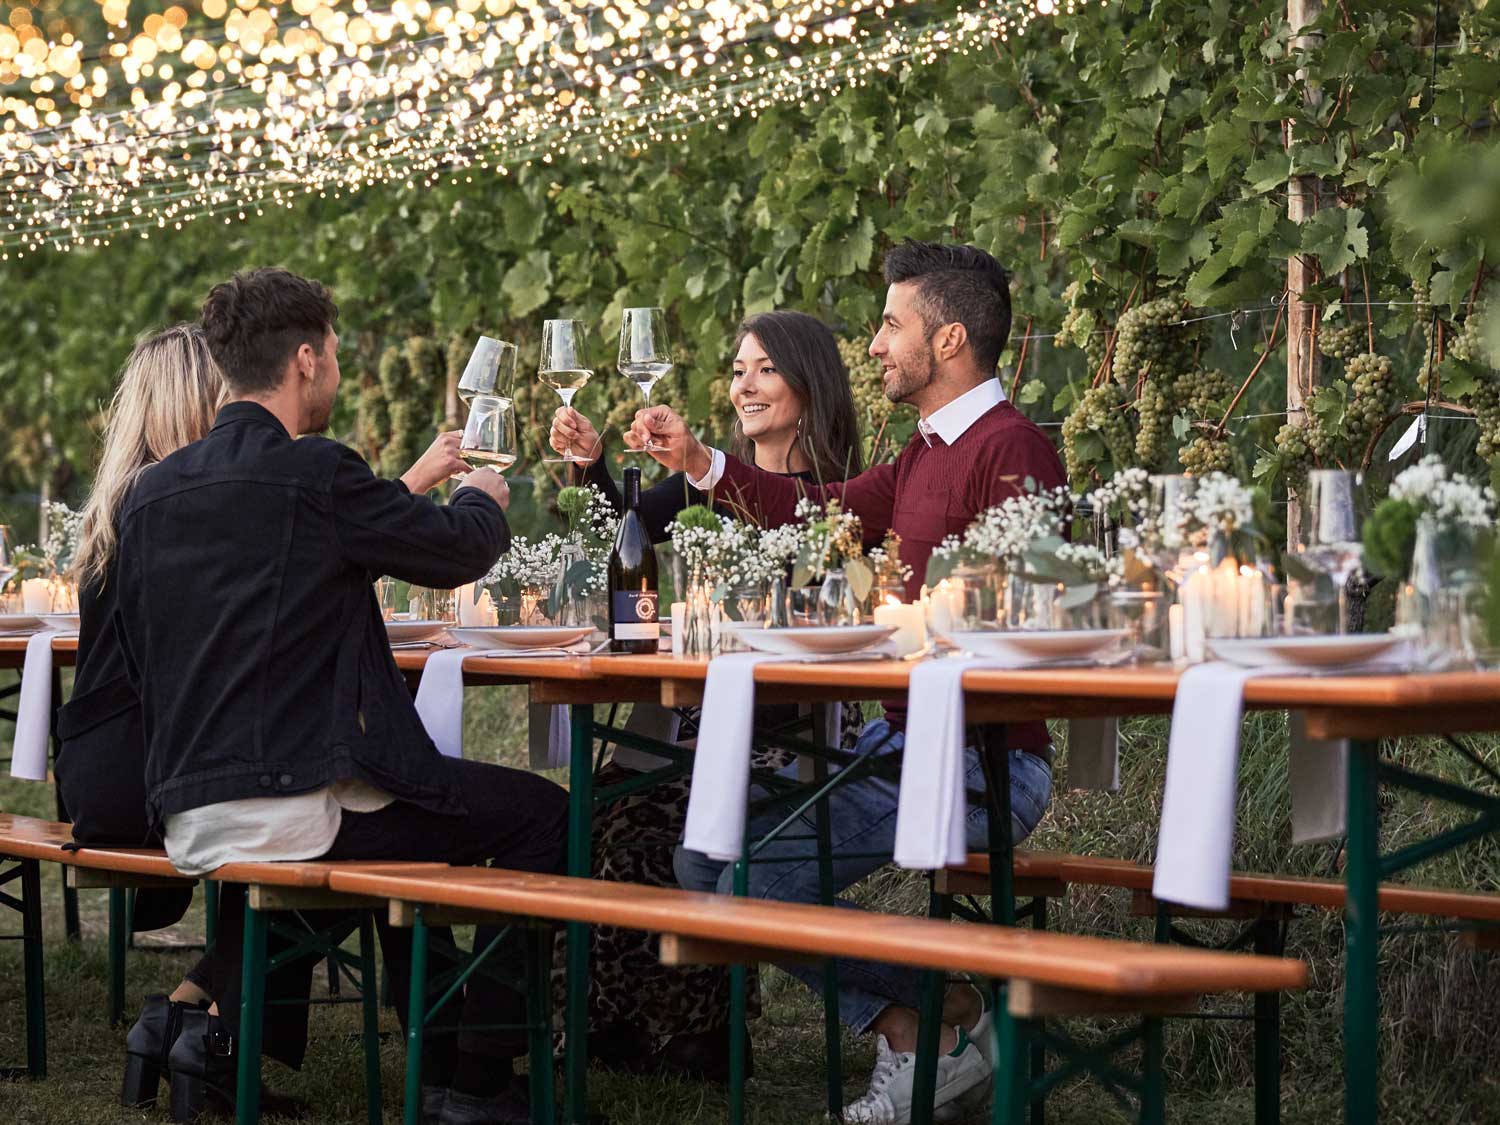 Quattro persone brindano con un vino su un set da birreria classico nella natura.